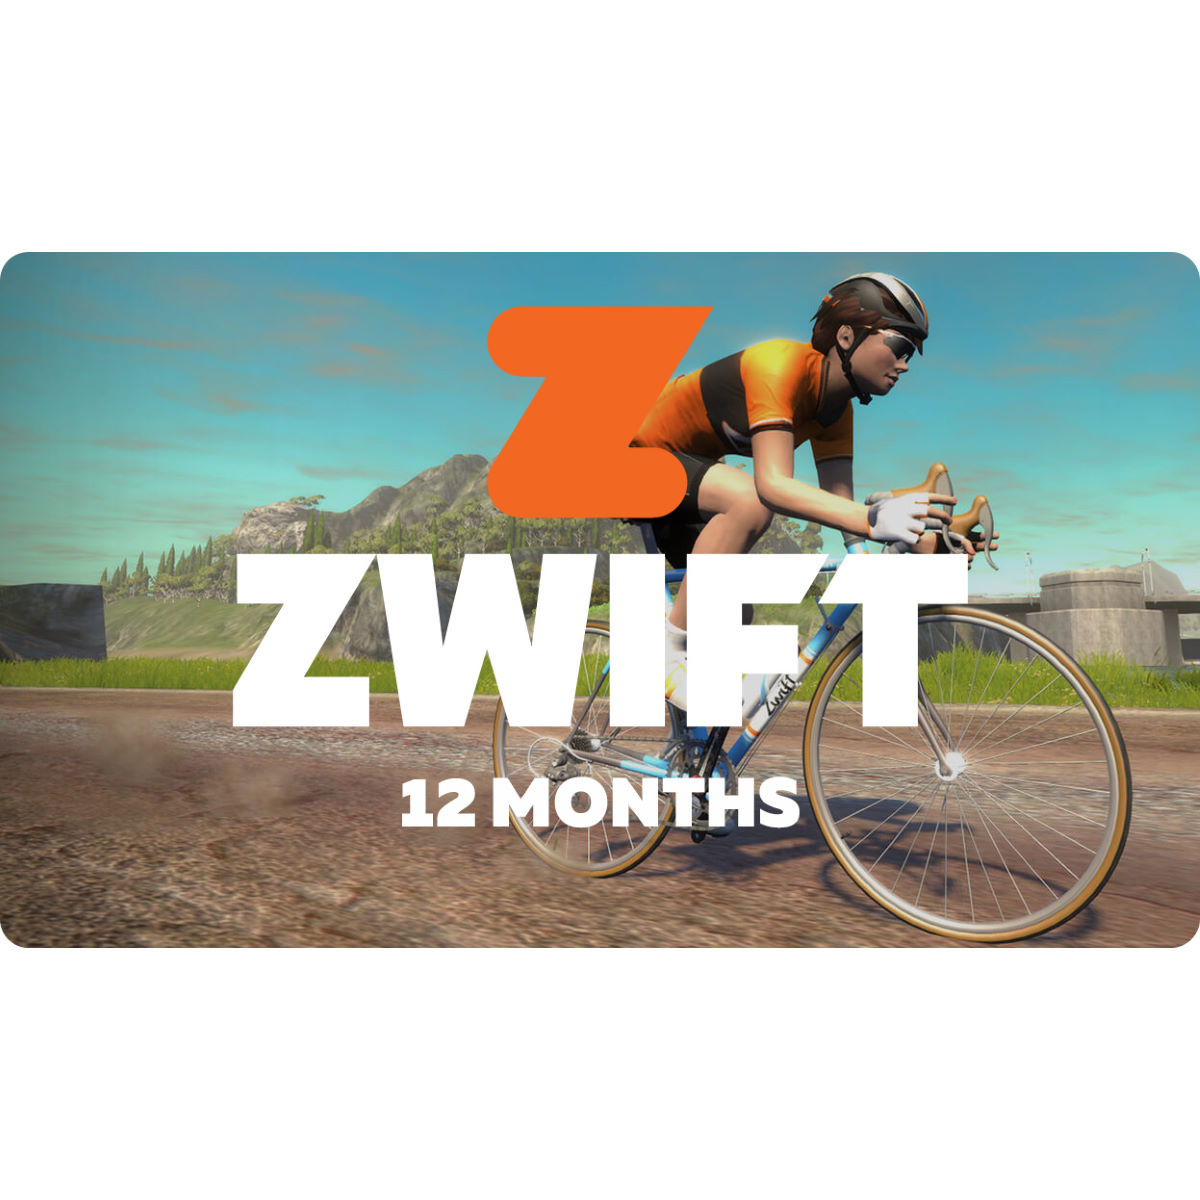 Suscripción de 12 meses con Zwift  - Vales regalo